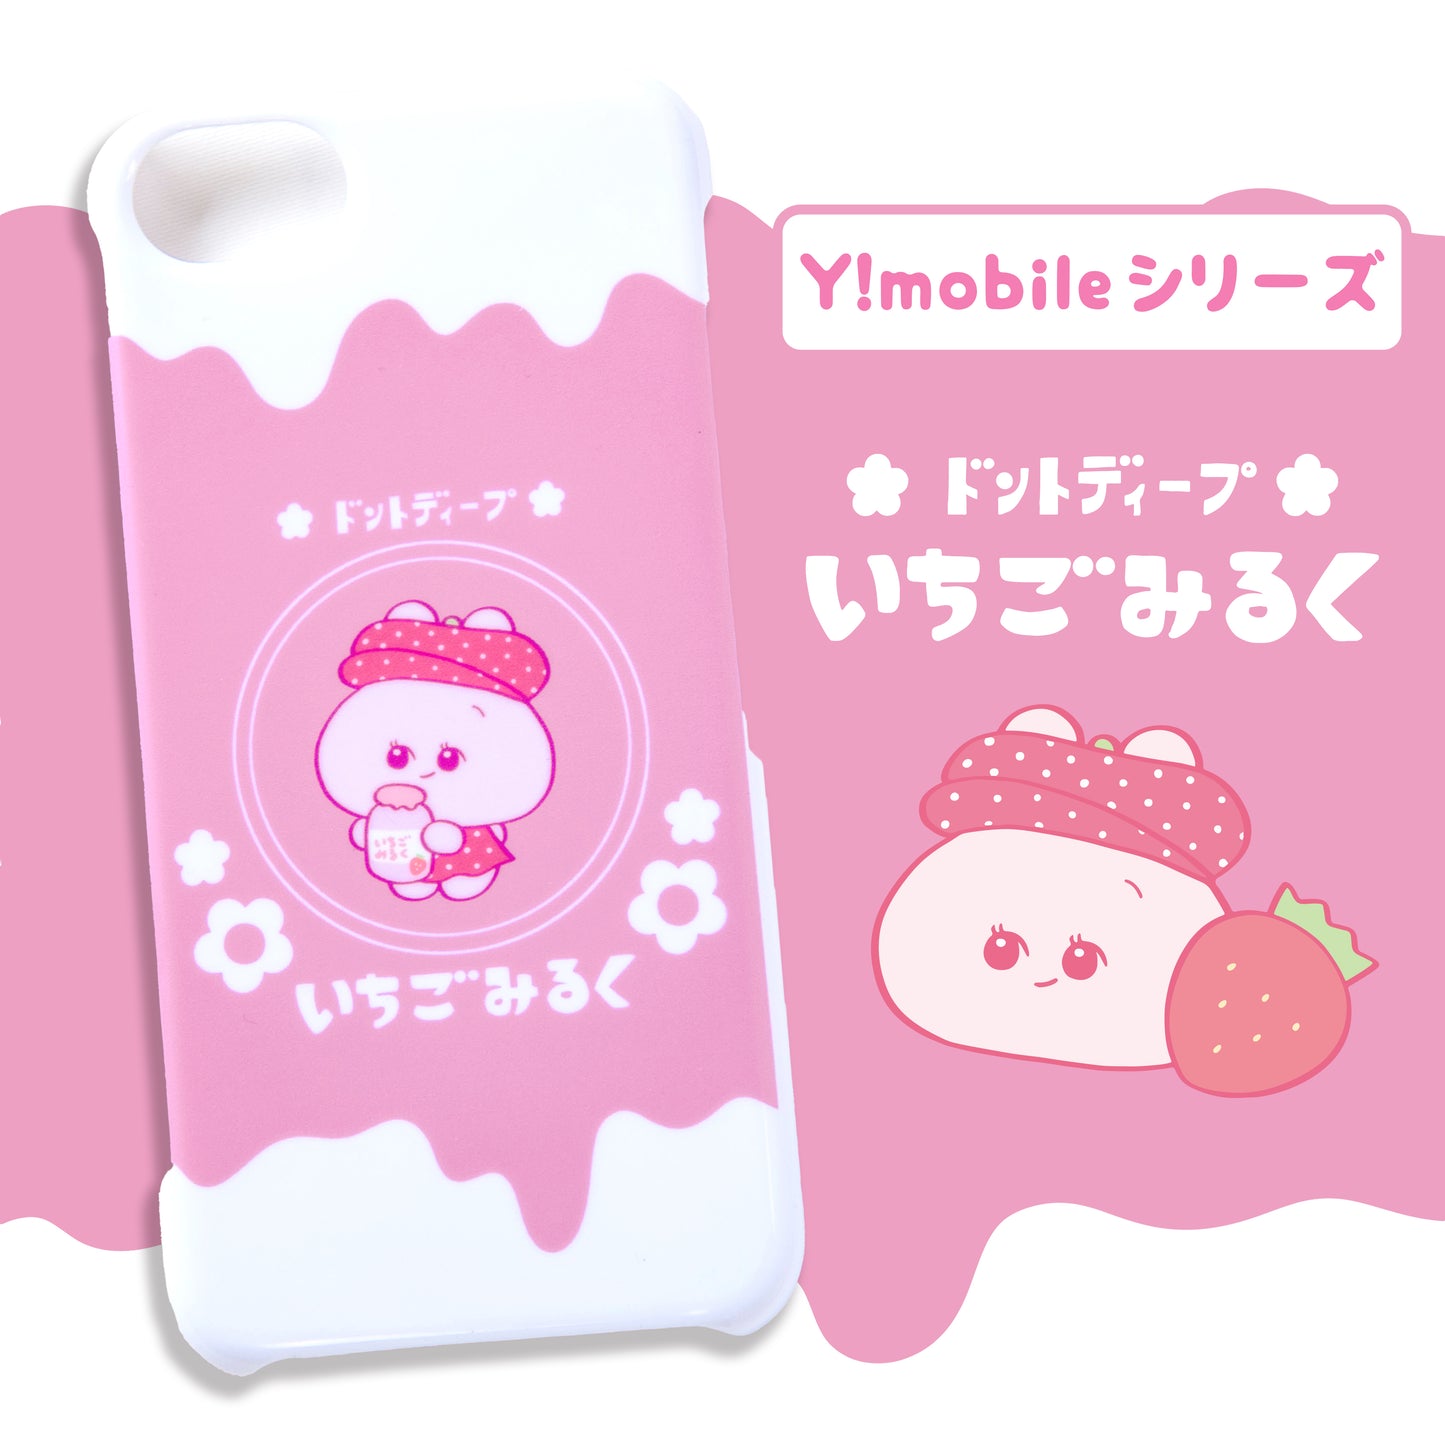 [Asamimi-chan] Smartphone-Hülle kompatibel mit fast allen Modellen (Ichigo Milk) Y!mobile-Serie [Auf Bestellung gefertigt]